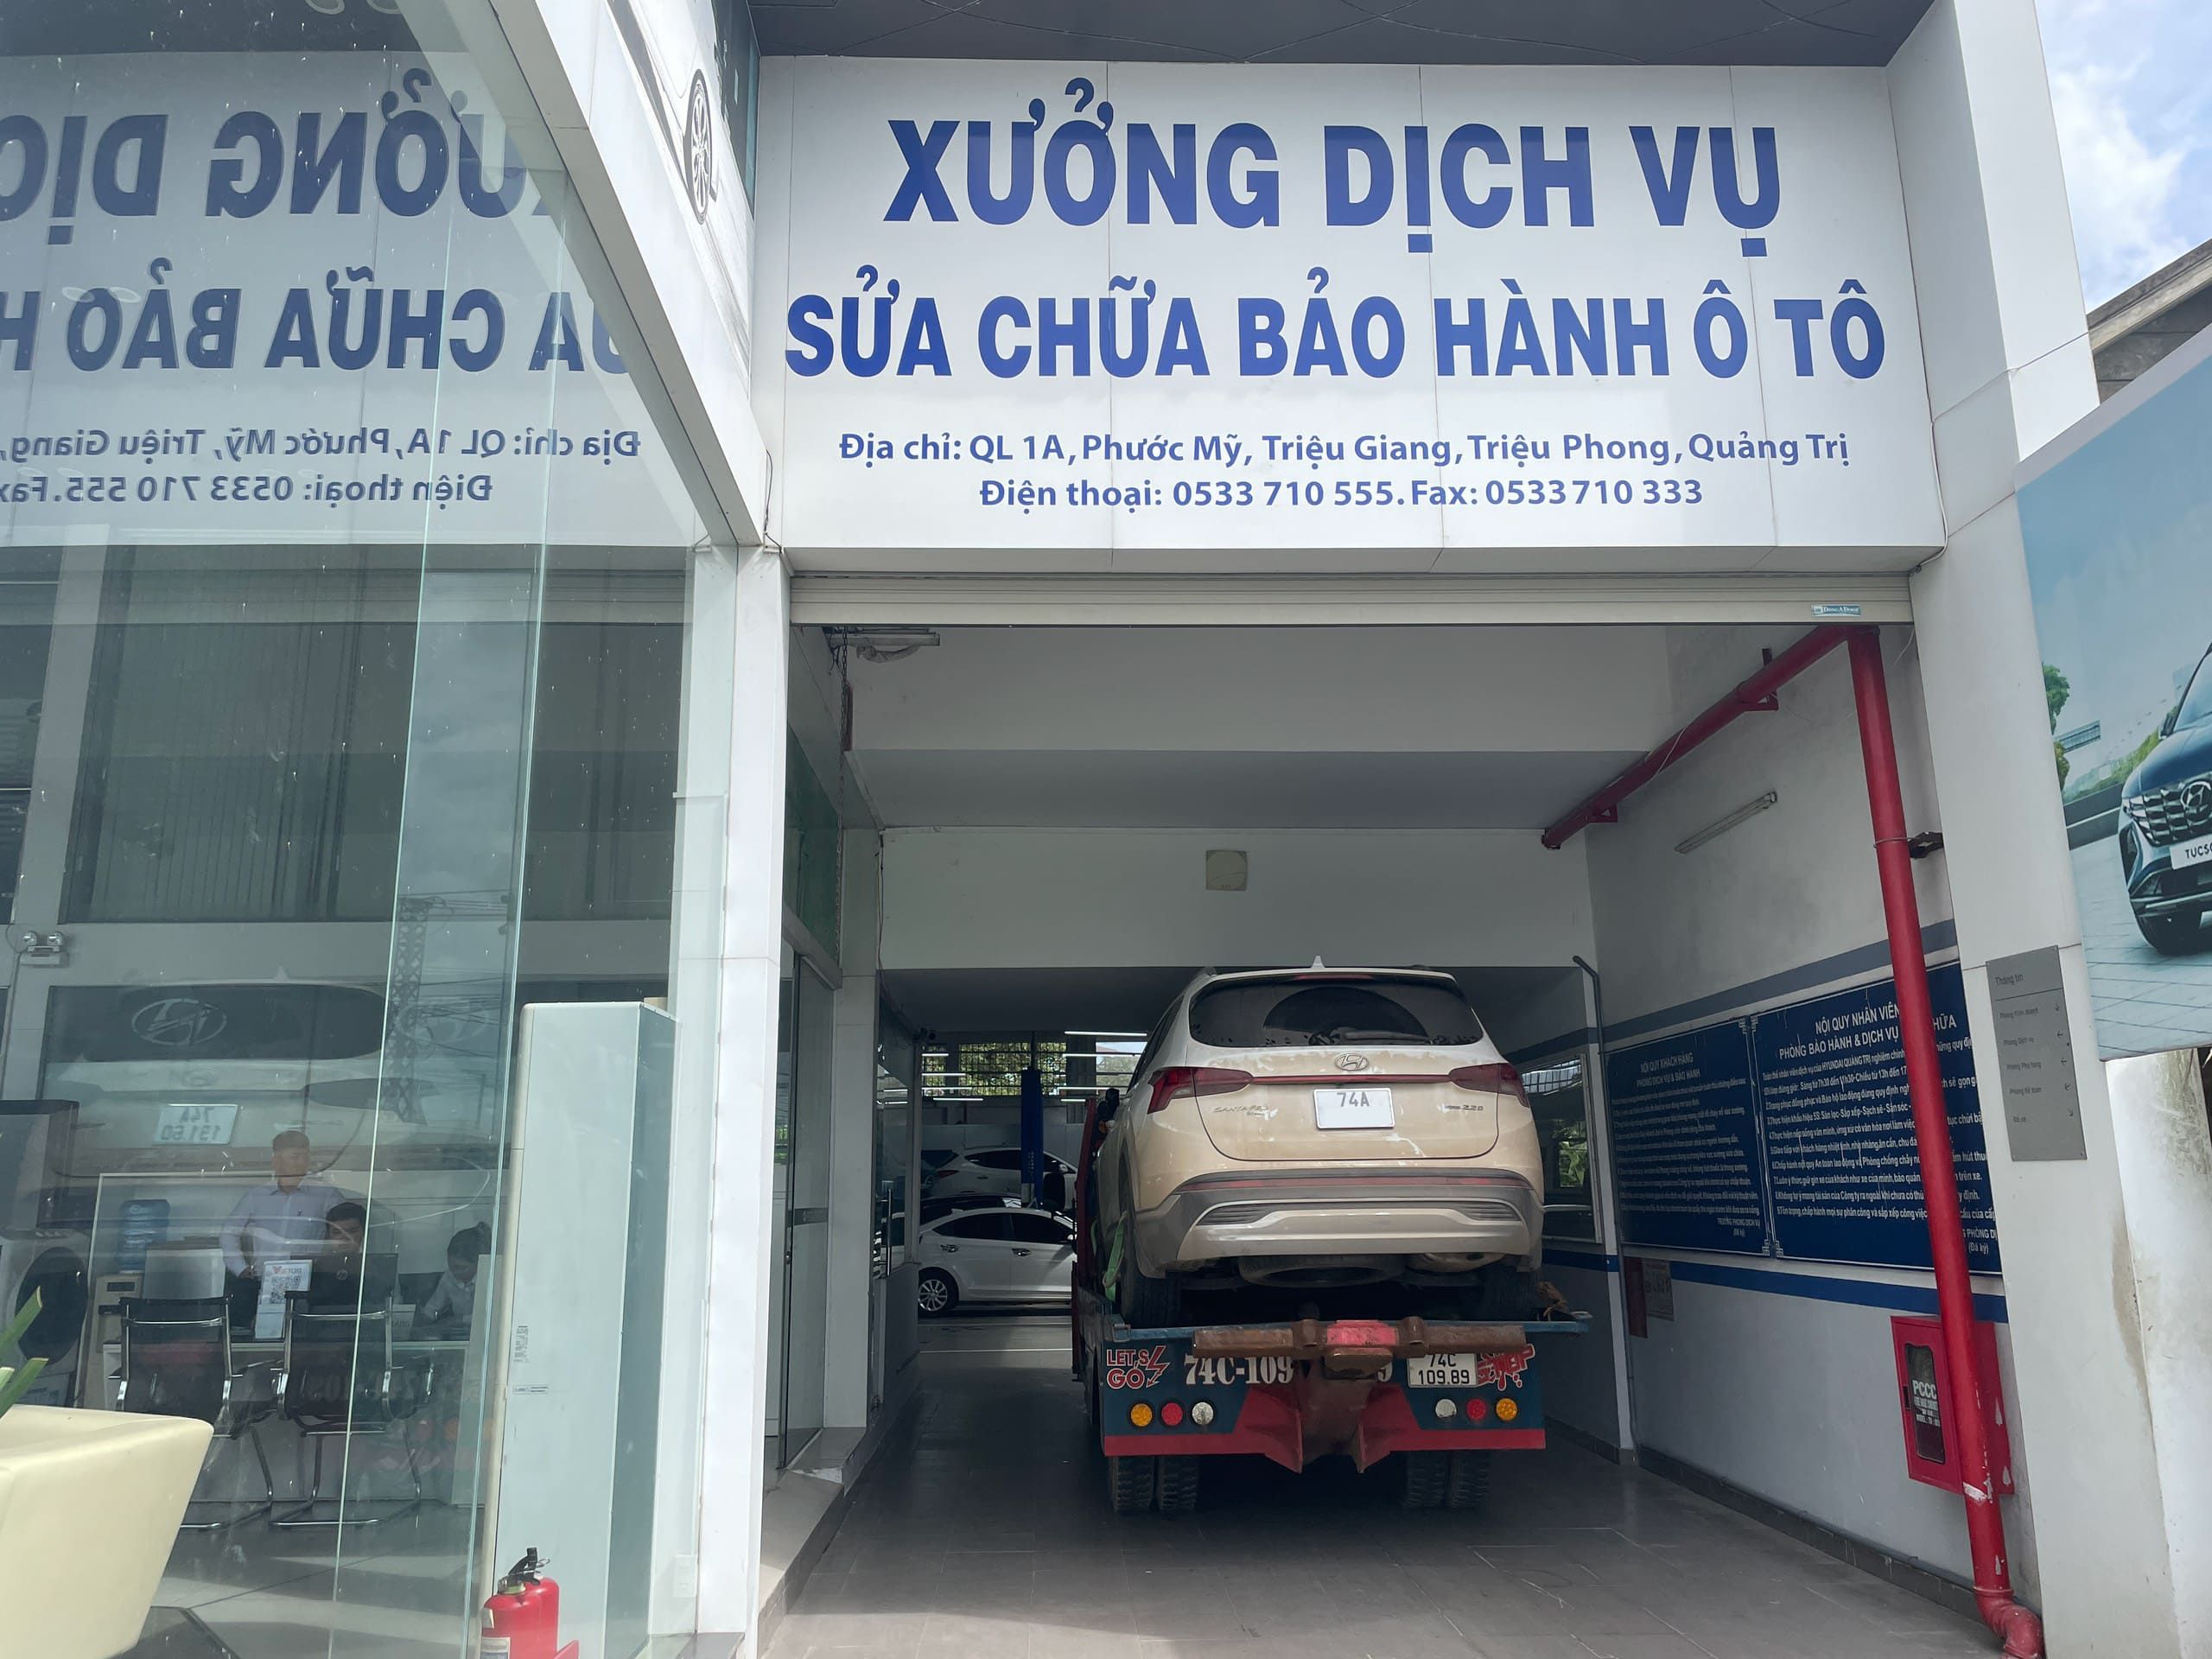 Dich Vu Cuu Ho Quang Tri